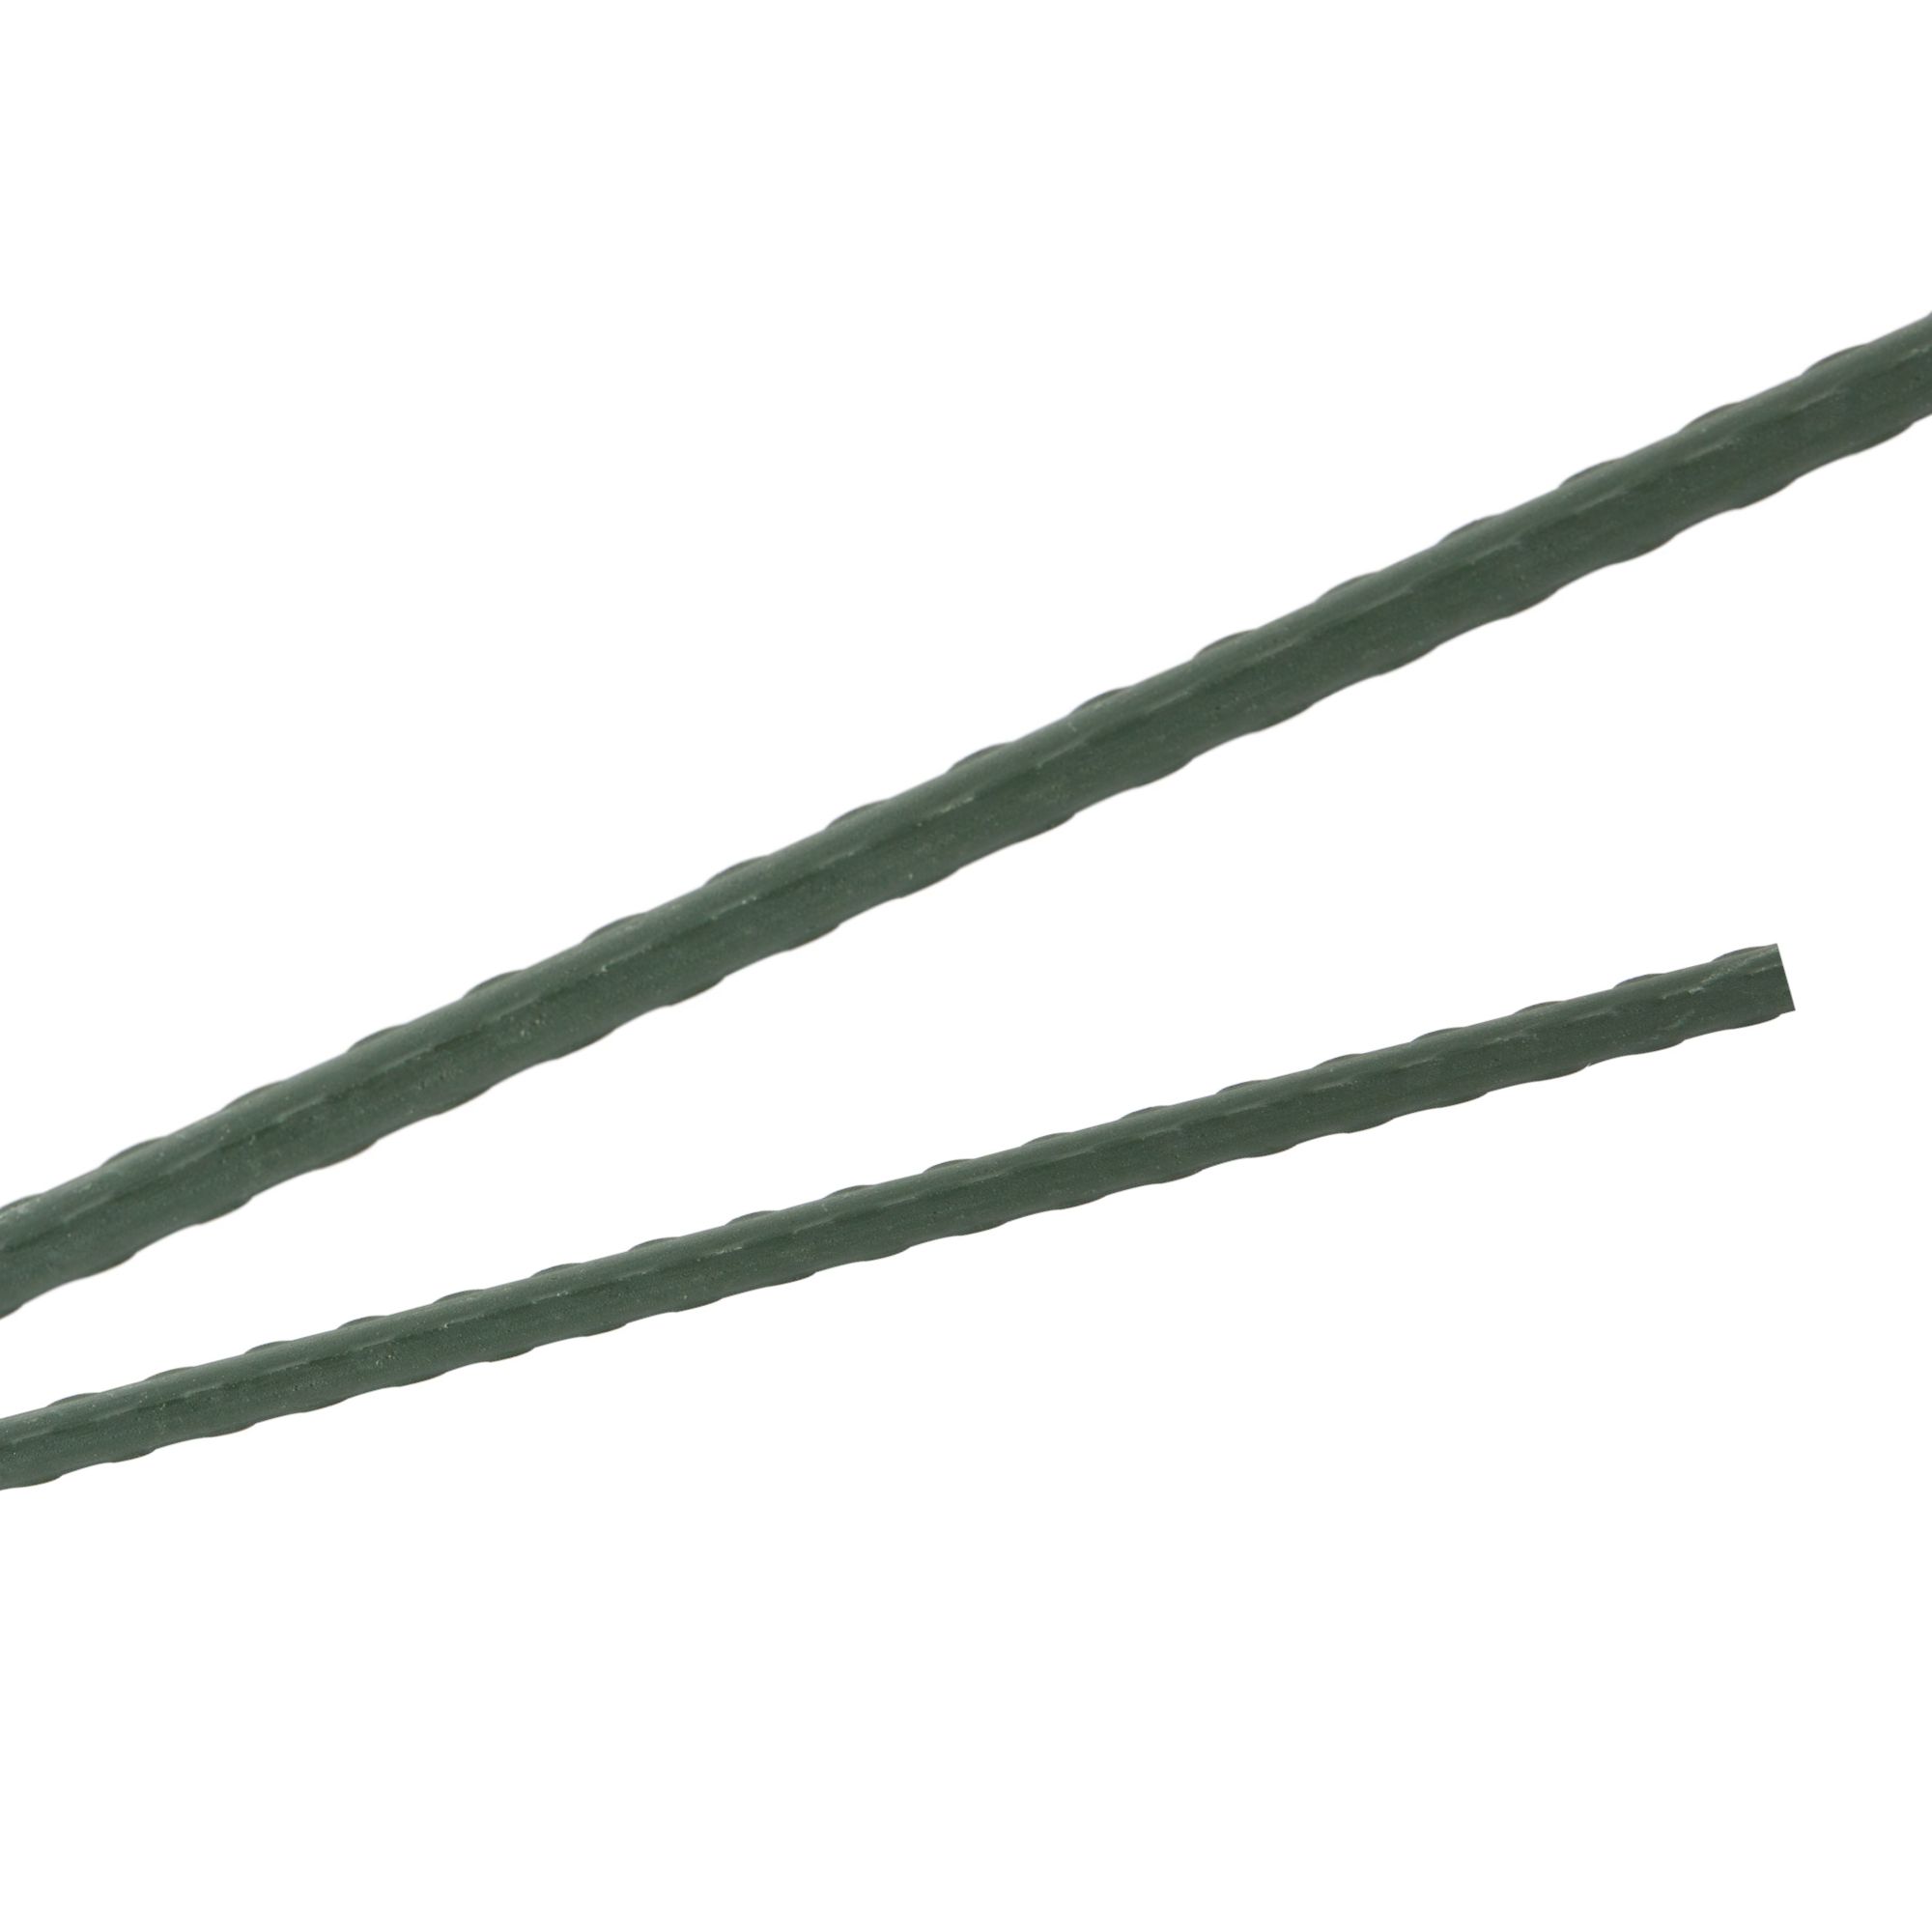 Tyč podpěrná, 8mm, 120cm, kov+PVC, zelená 0.072000 Kg GIGA Sklad20 211787 177